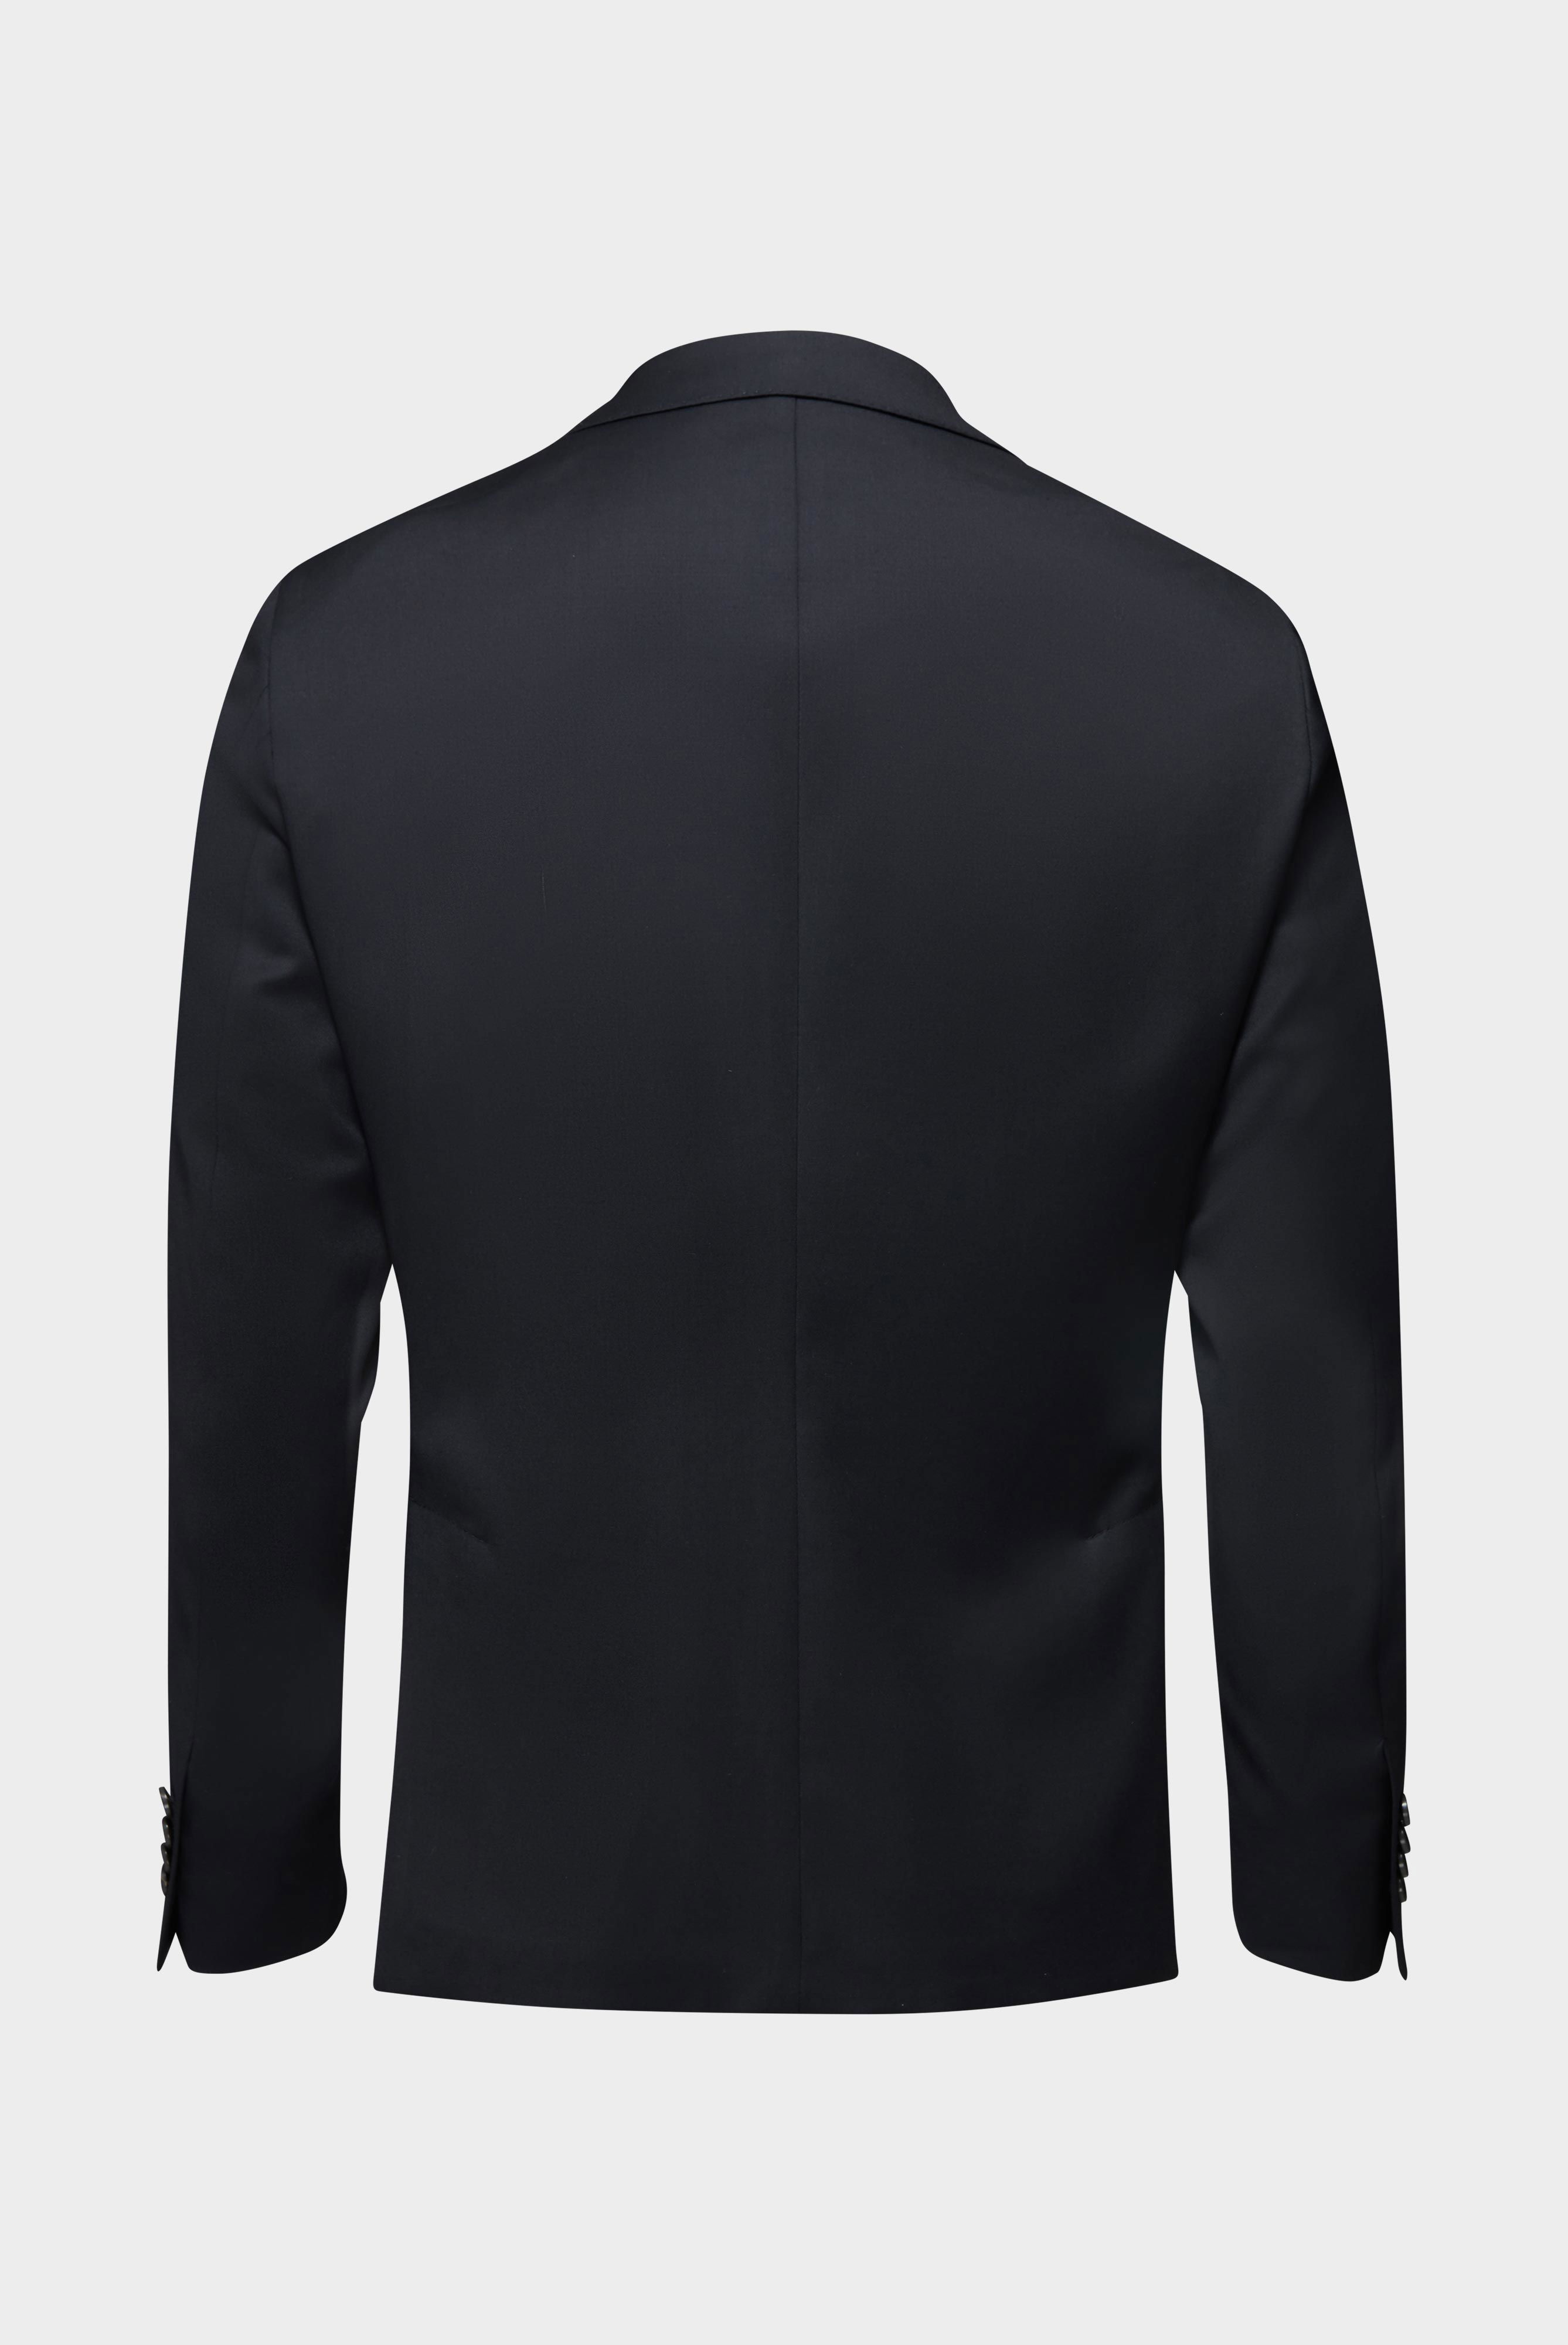 Blazers+Wool Jacket Slim Fit+20.7759..H01010.099.28